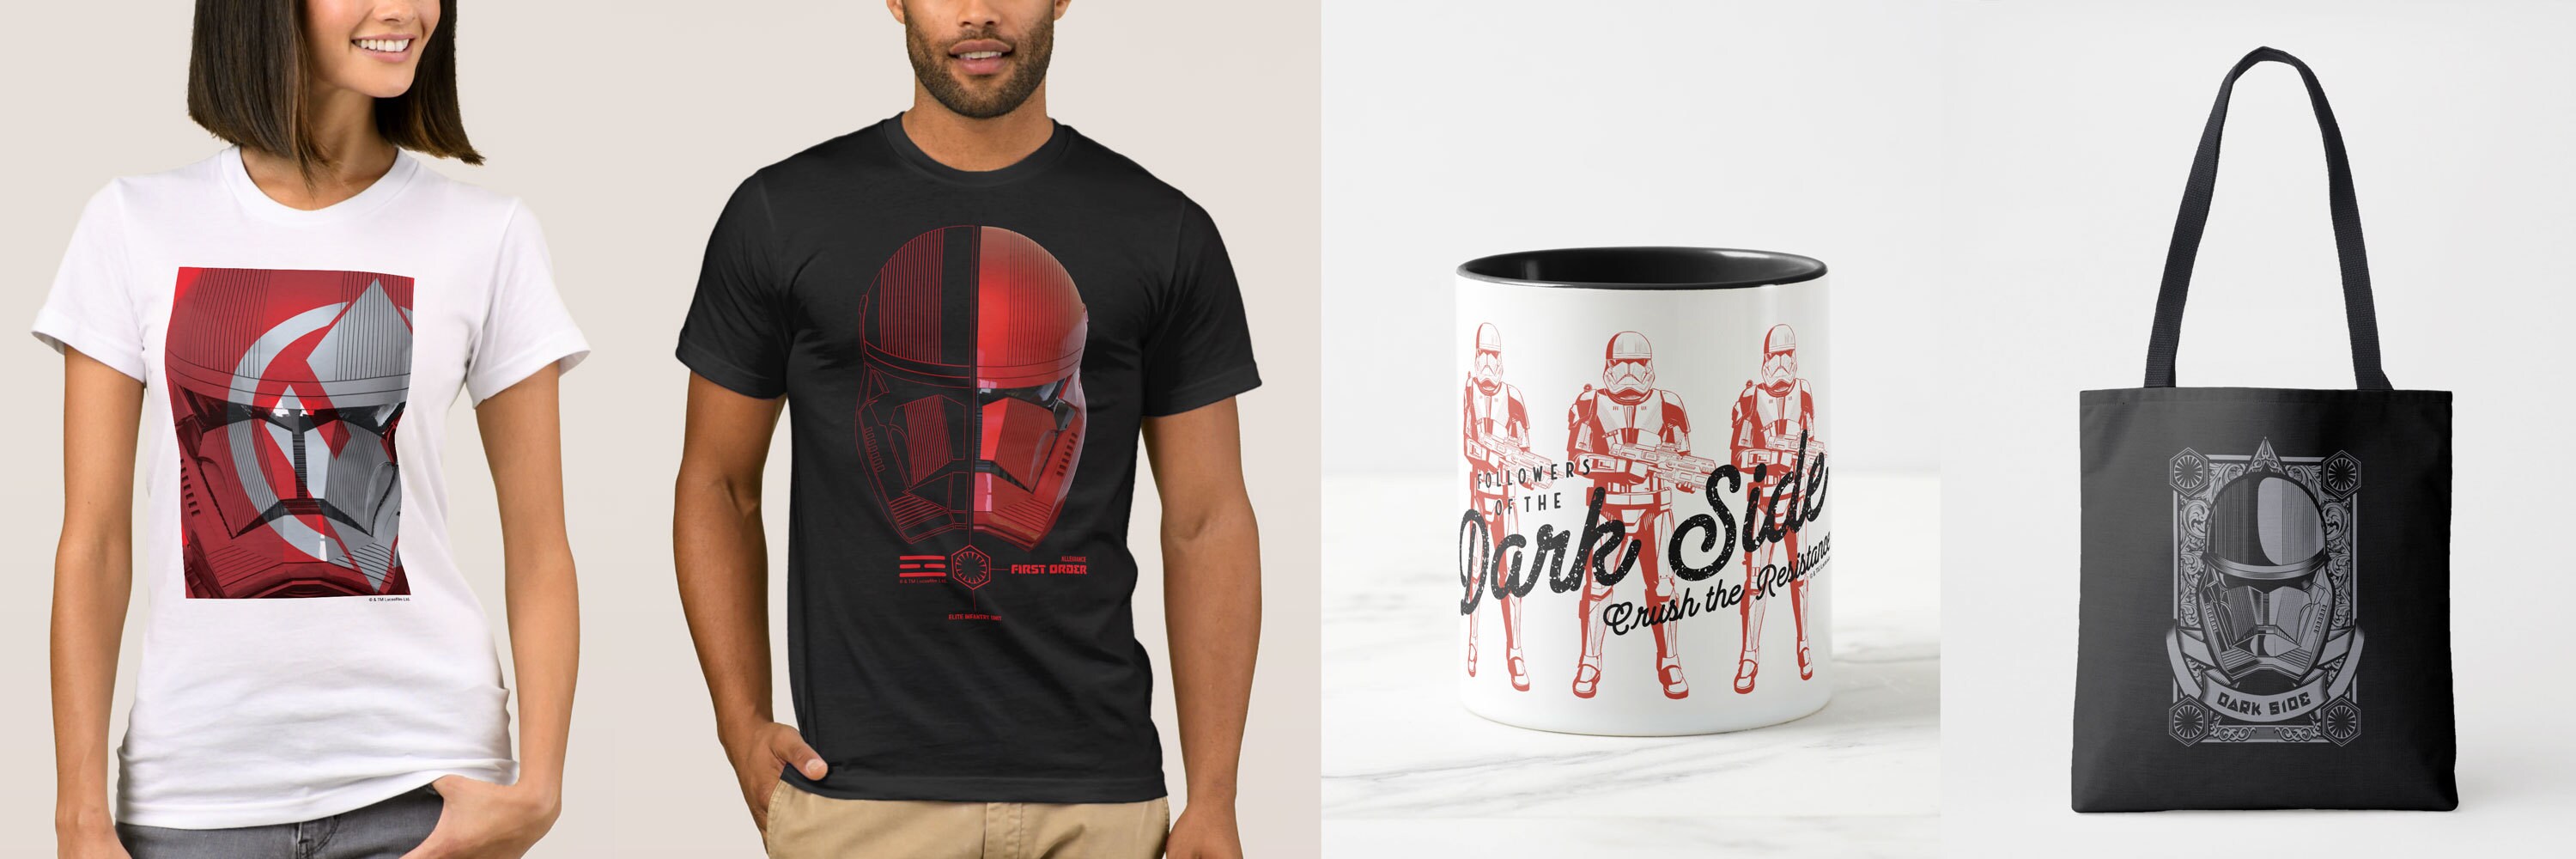 Zazzle Sith Trooper t-shirts, mug, and tote